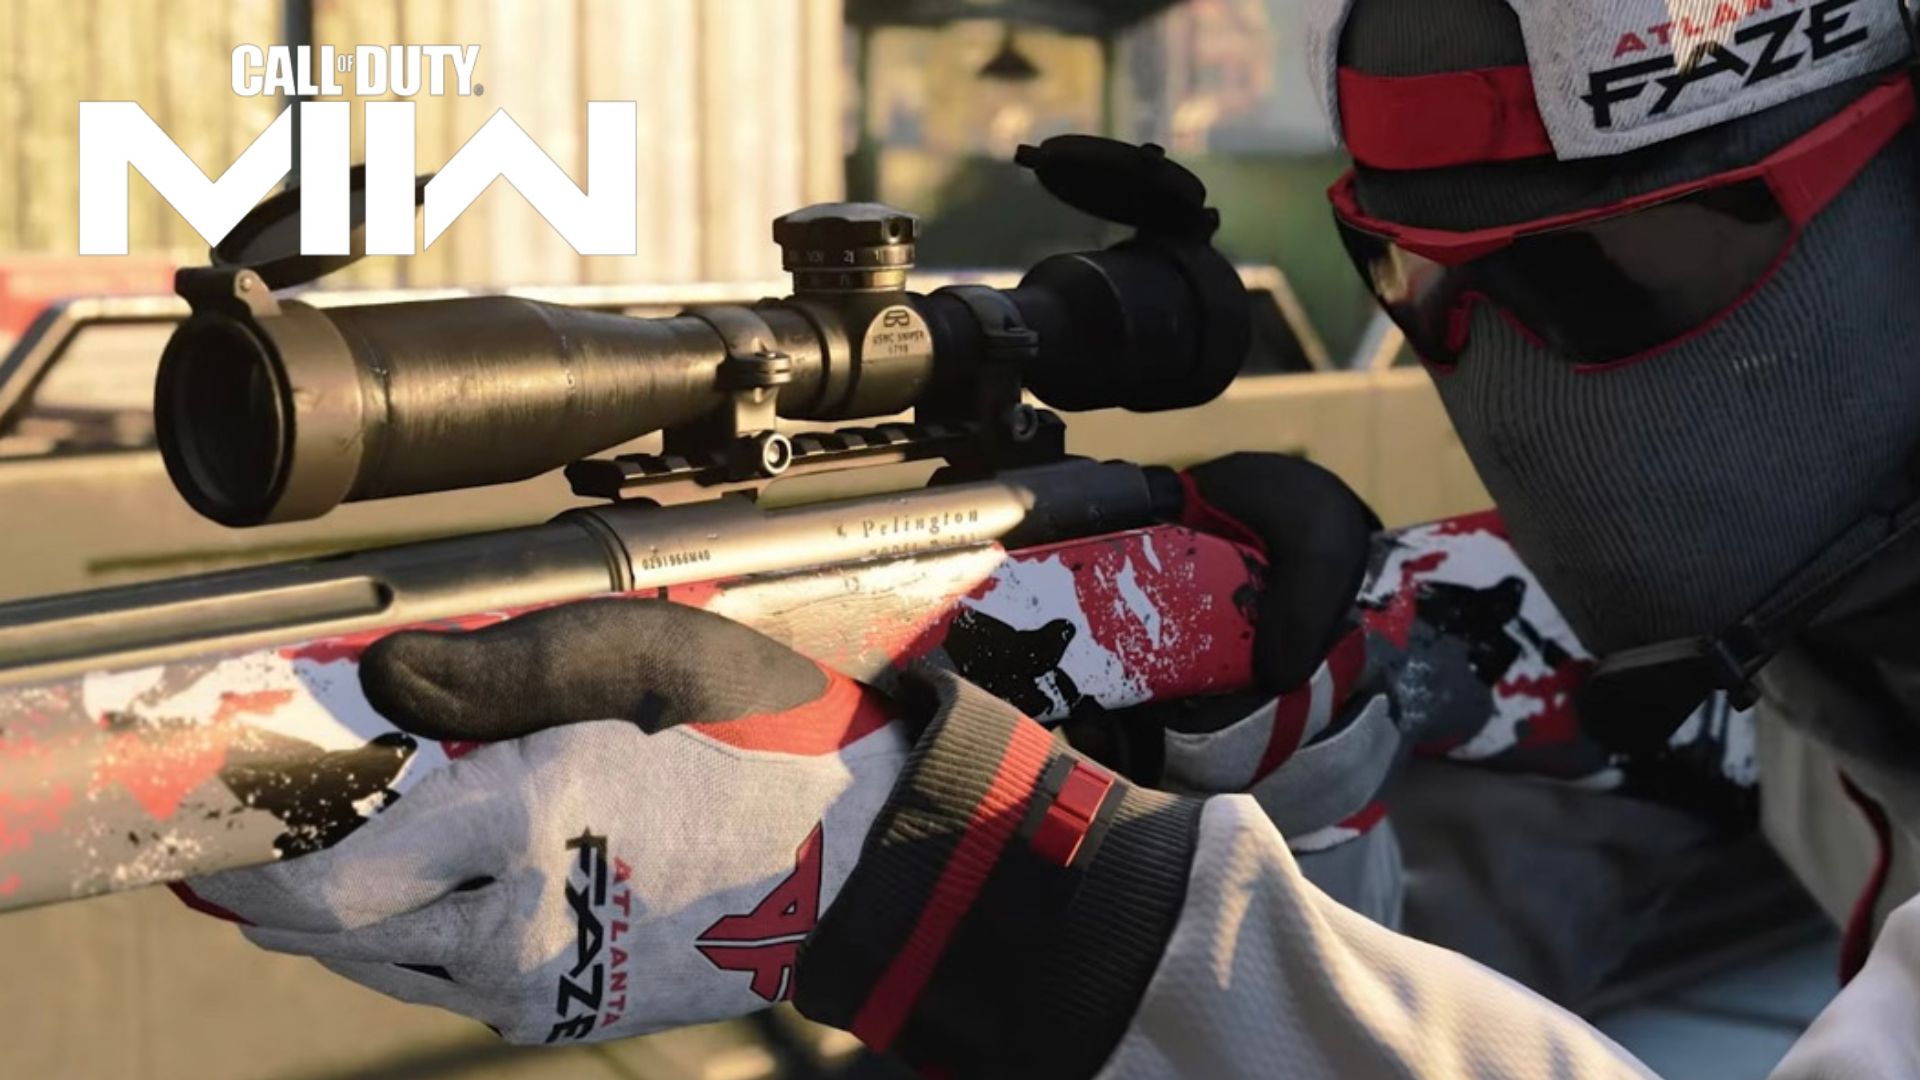 Call of Duty Charakter in Atlanta Faze Haut mit Scharfschützen